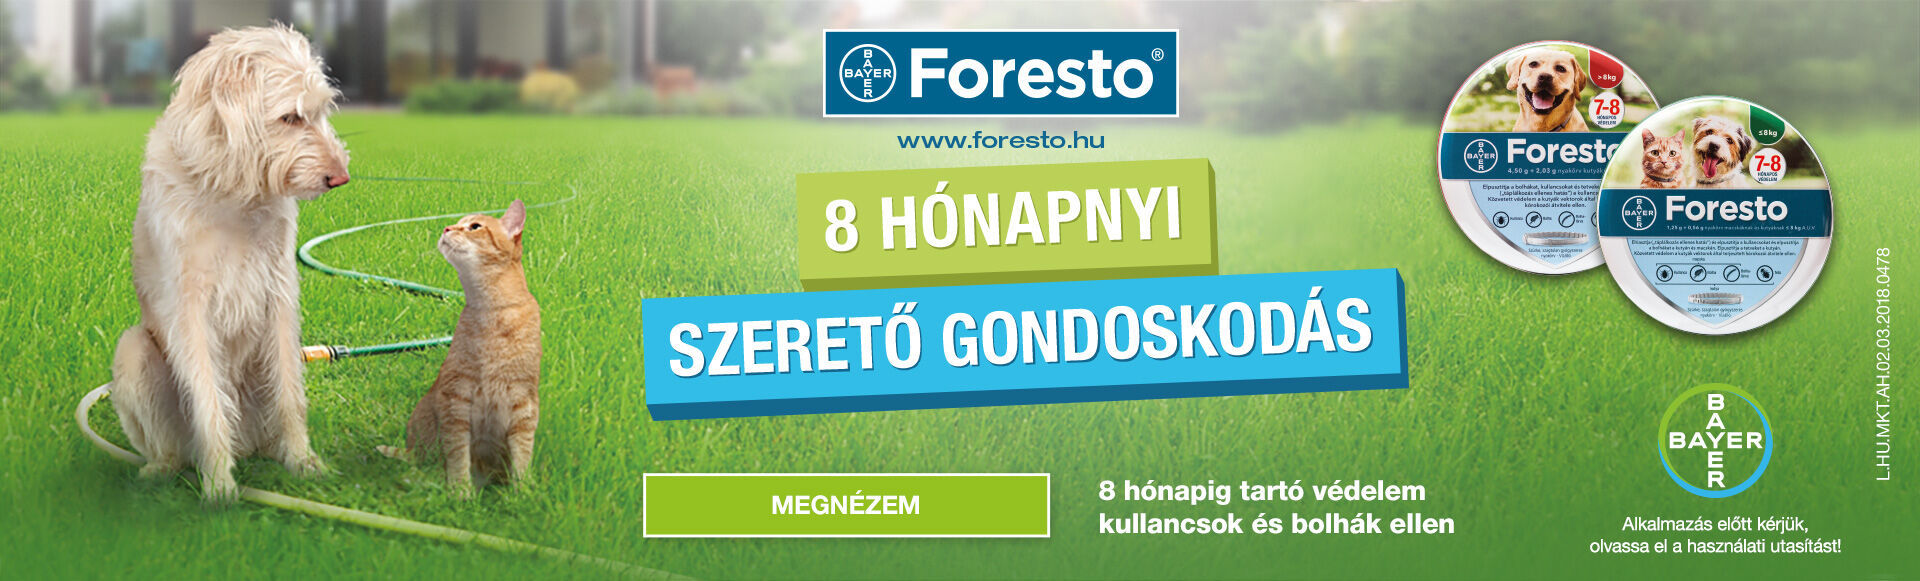 Foresto - 8 hónapnyi gondoskodás - Élősködők elleni védelem